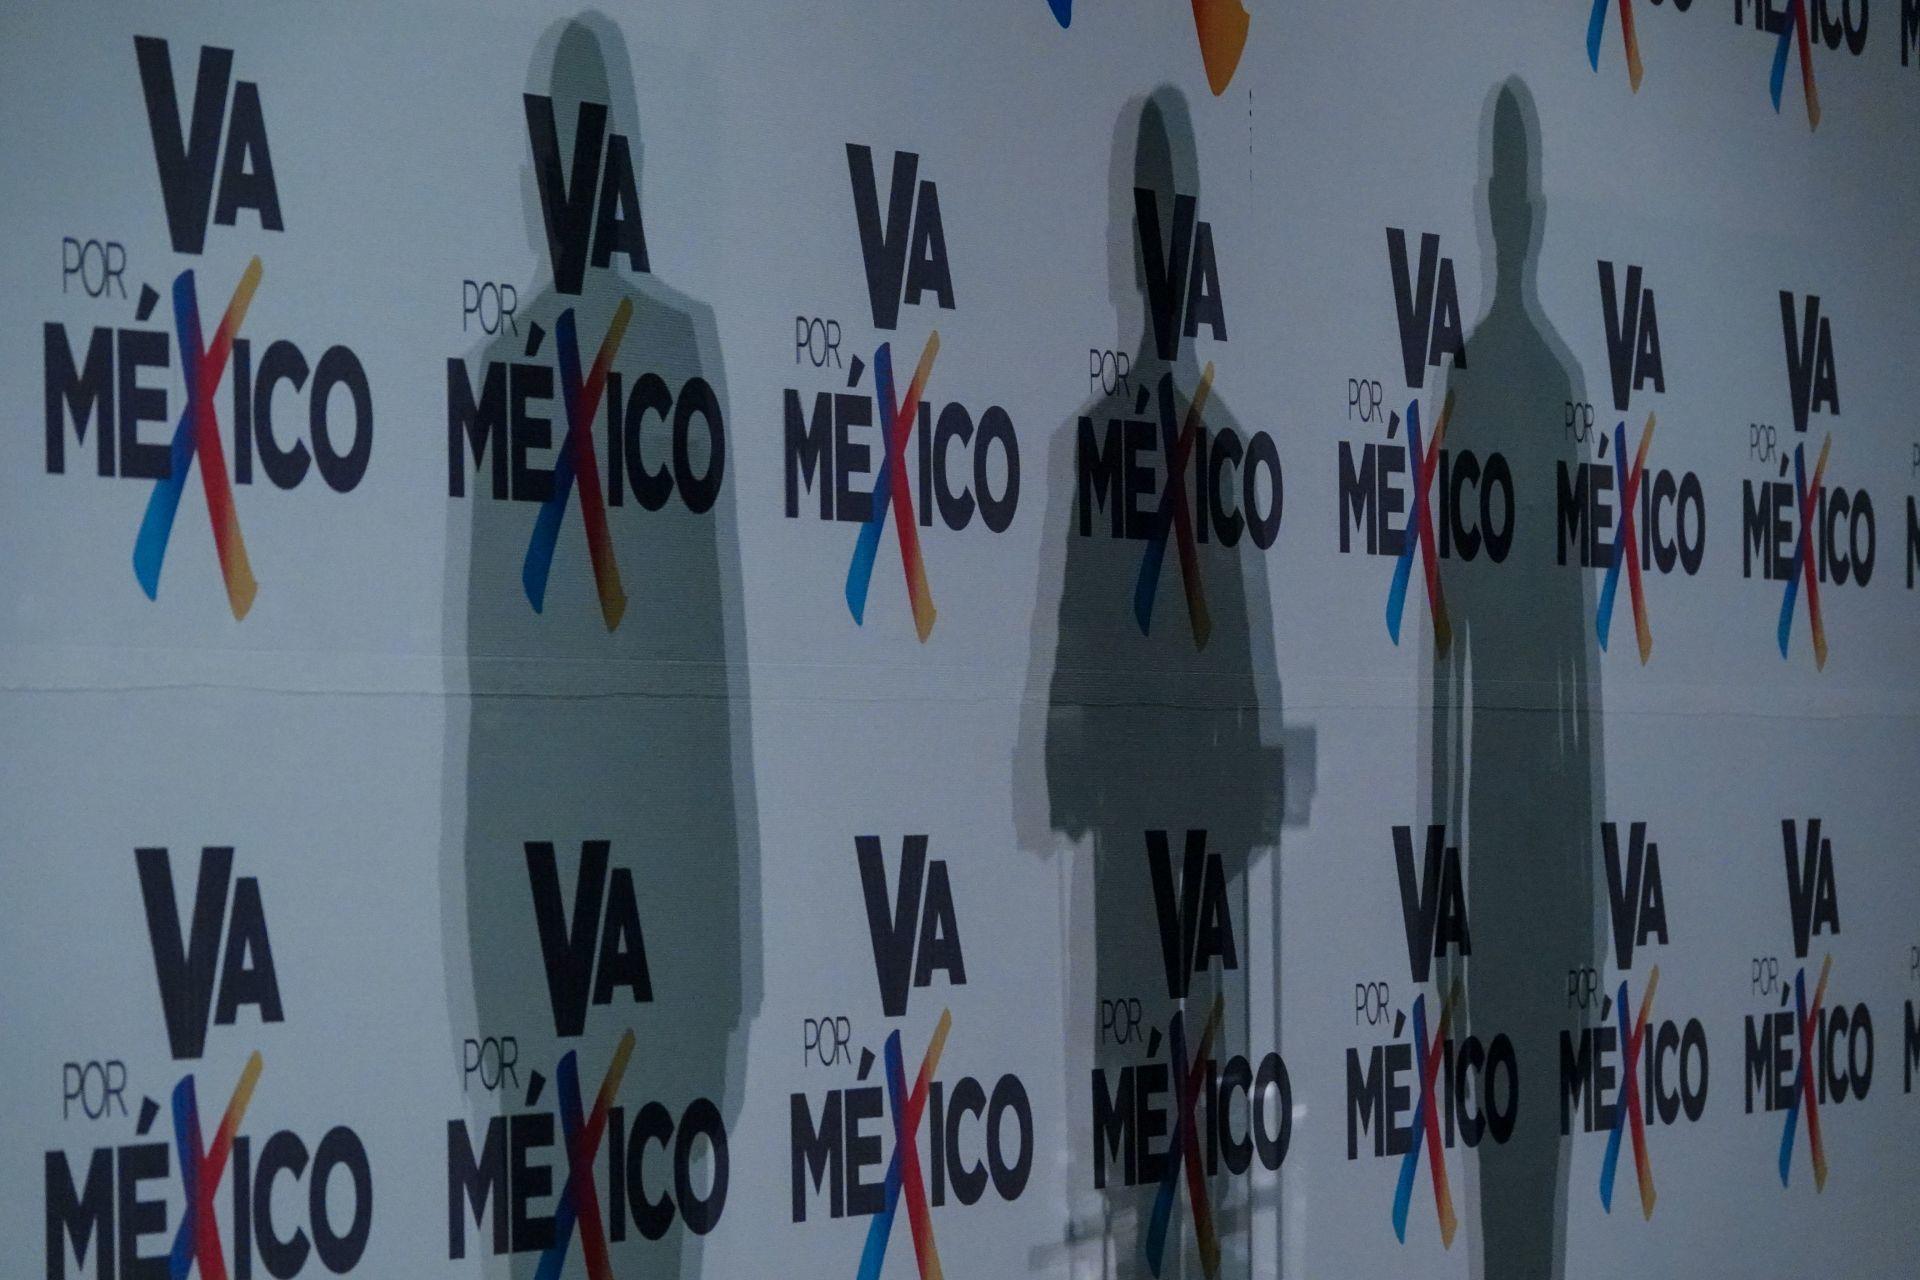 Va Por México se pronuncia contra violencia en Zacatecas, Veracruz y Morelos